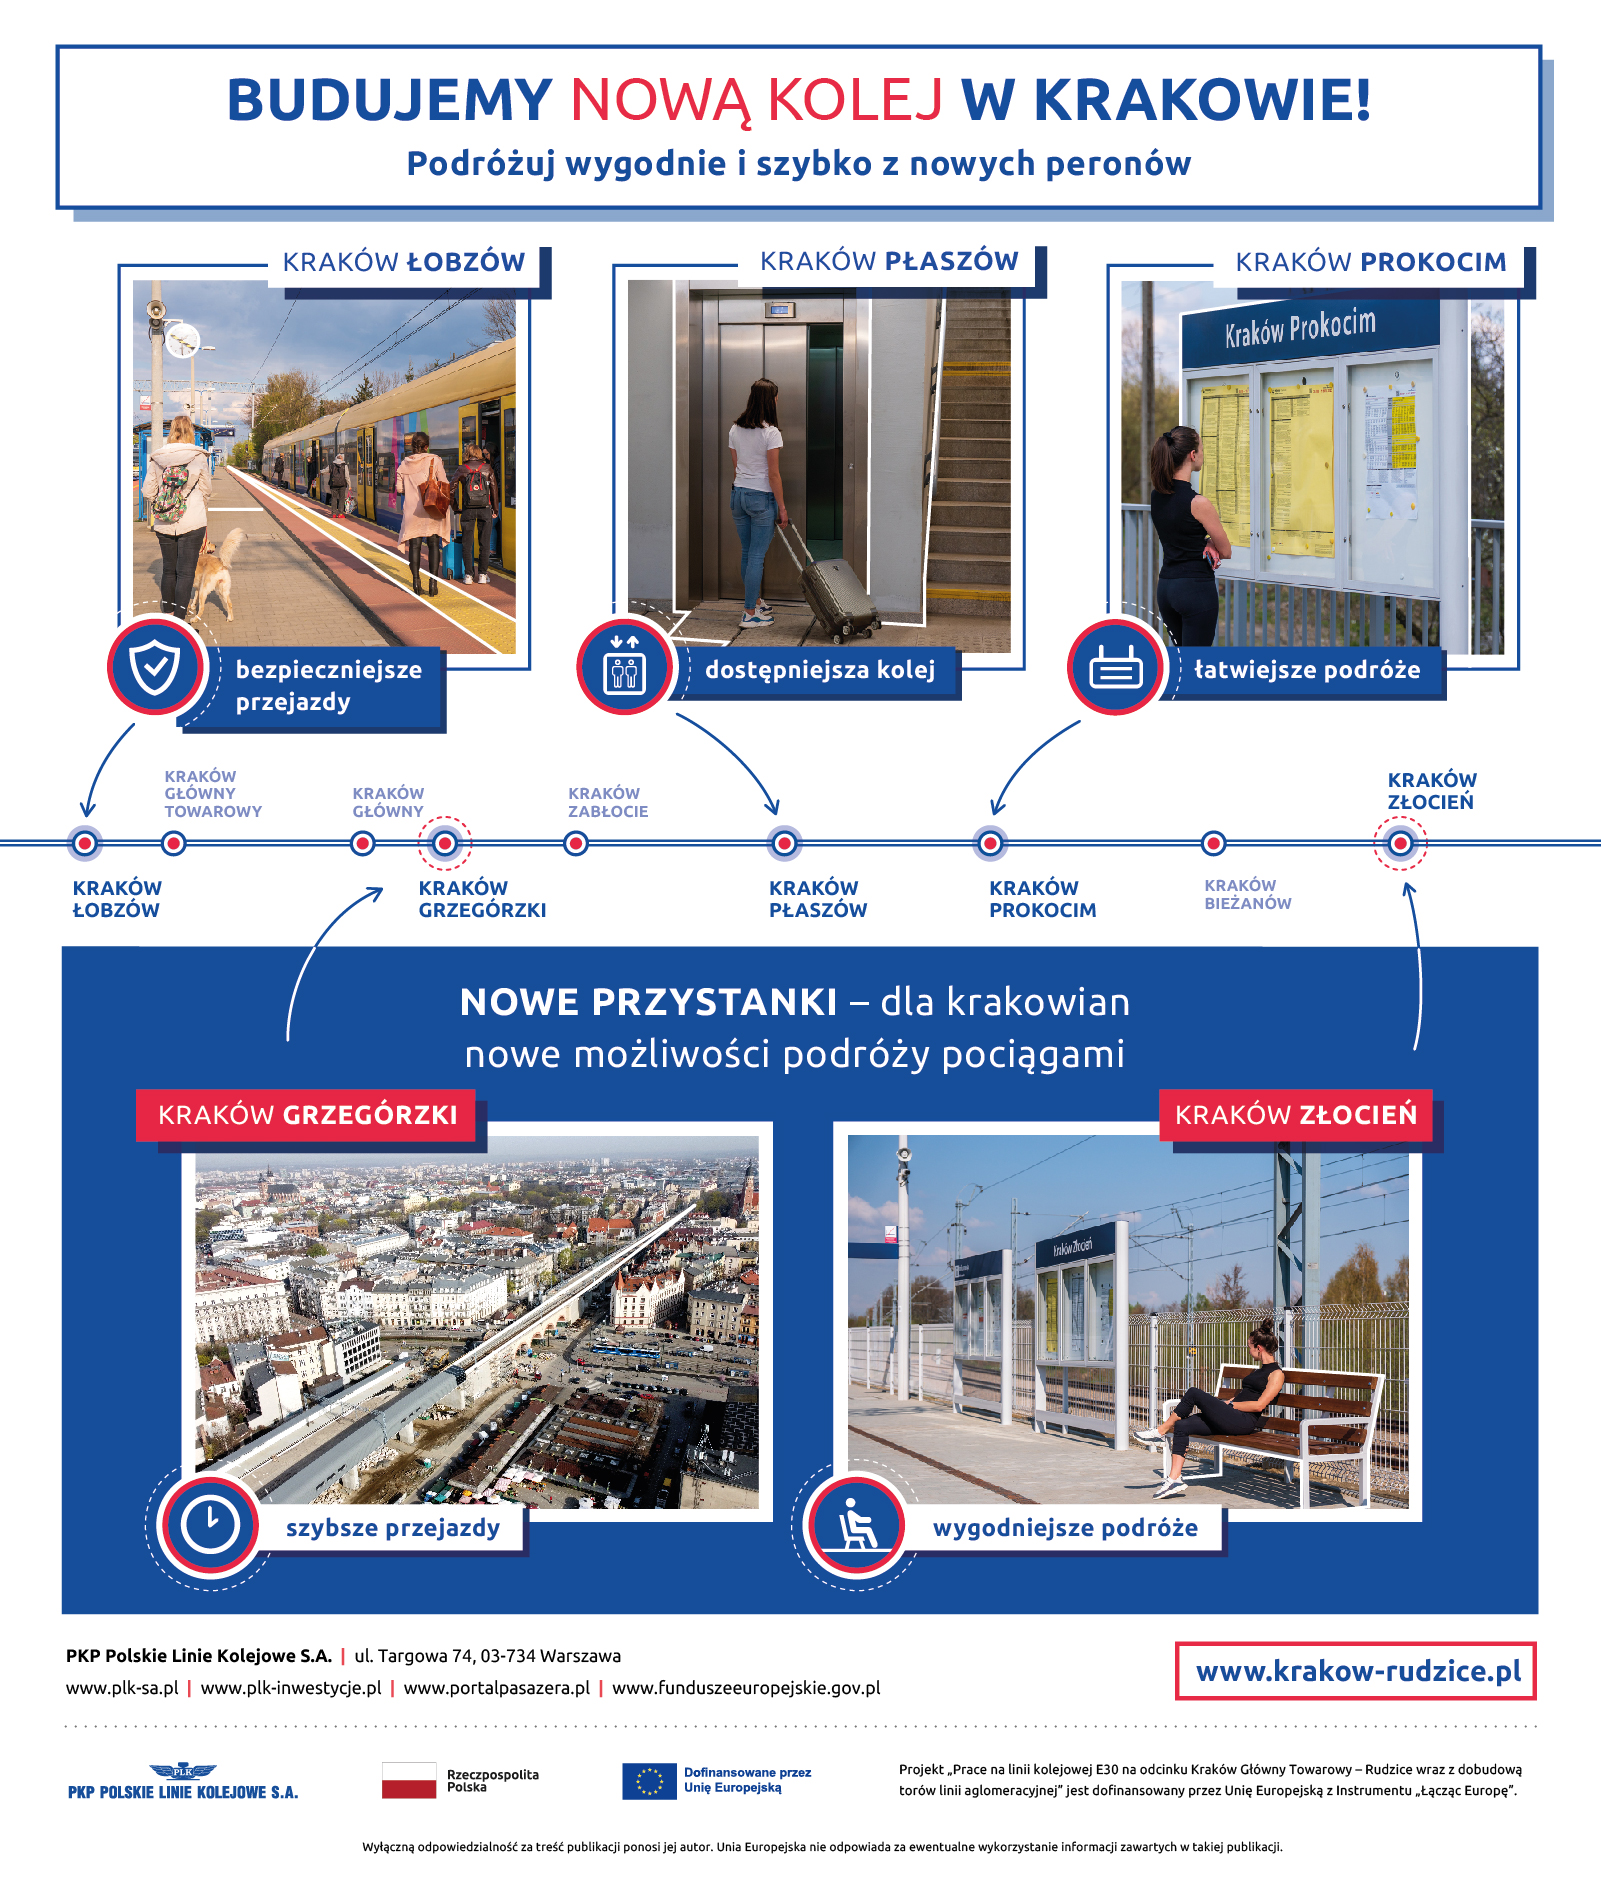 Infografika prezentuje zdjęcia gotowej infrastruktury na stacjach i przystankach w Krakowie. Pokazane są również zdjęcia z budowanych nowych przystanków – Kraków Grzegórzki oraz Kraków Złocień.